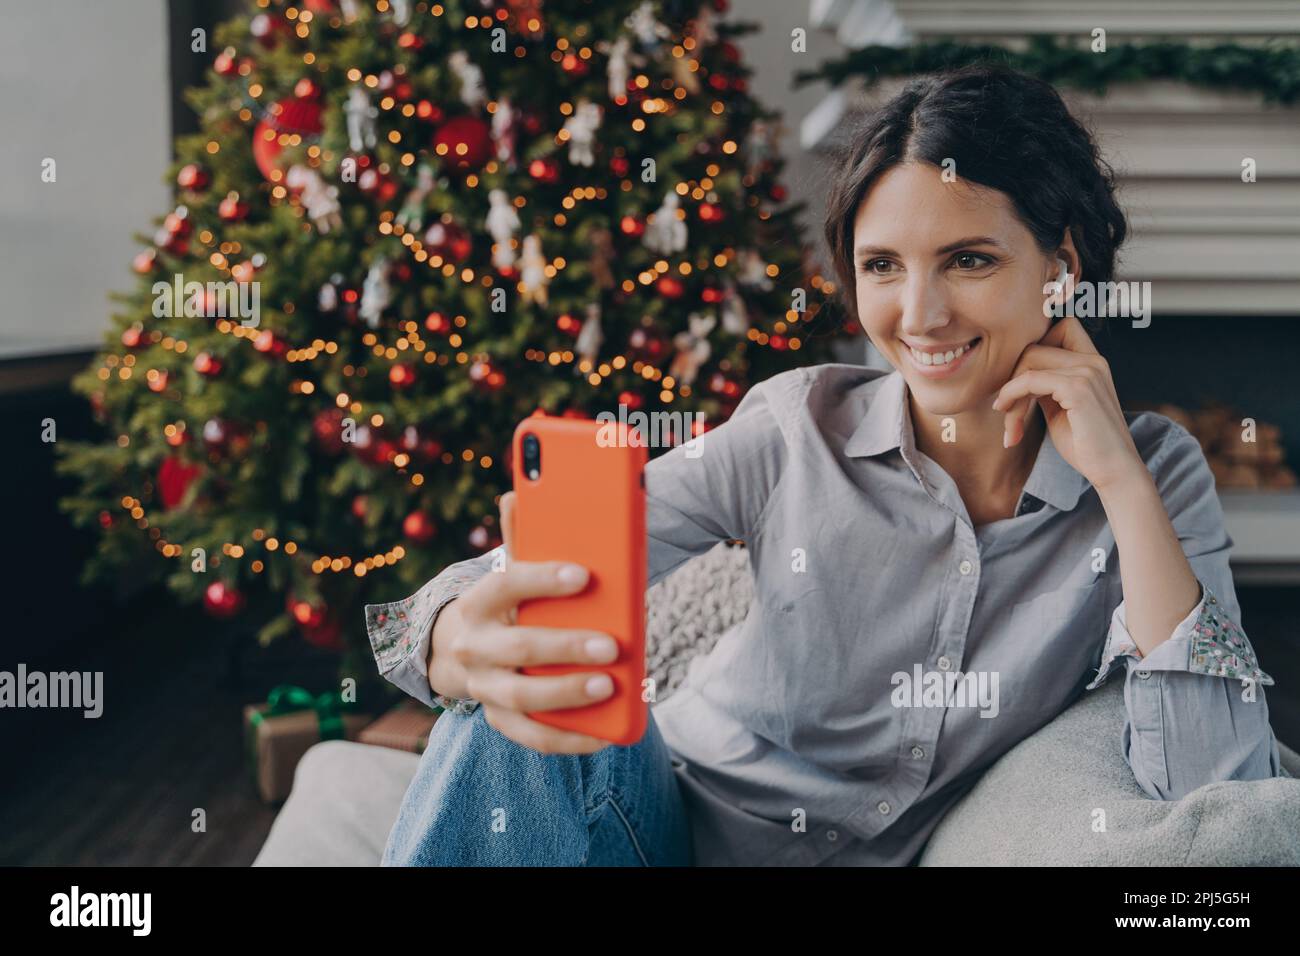 Fröhliche junge spanierin, die die weihnachtszeit genießt und Selfie macht, während sie auf dem bequemen Sofa neben dem festlichen, bunten Weihnachtsbaum sitzt. Angenehmes Blo Stockfoto